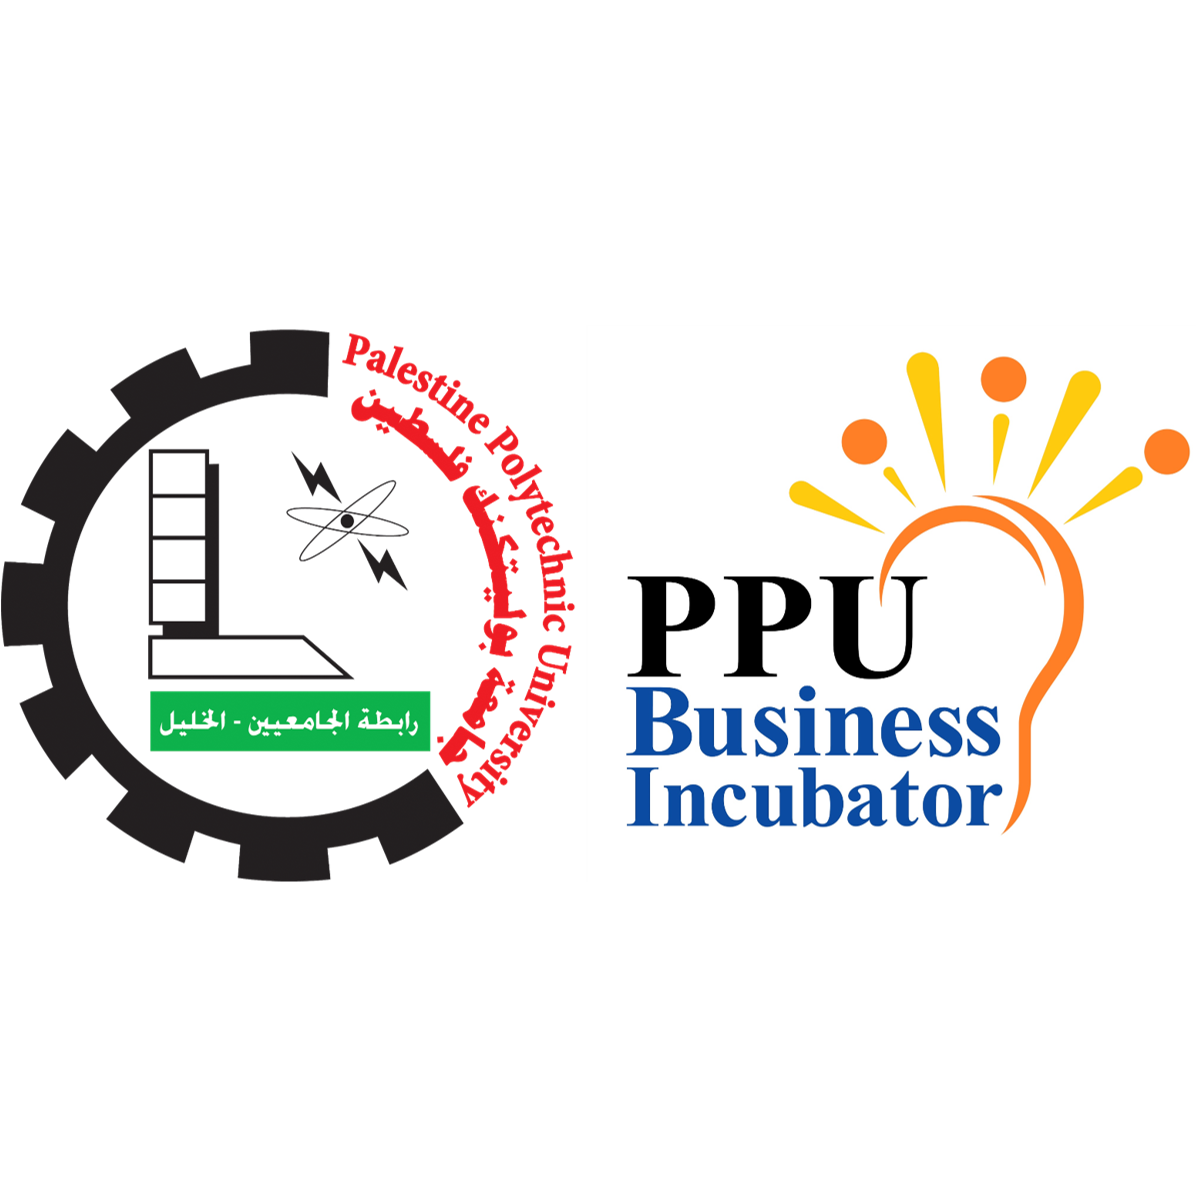 PPU Business Incubator